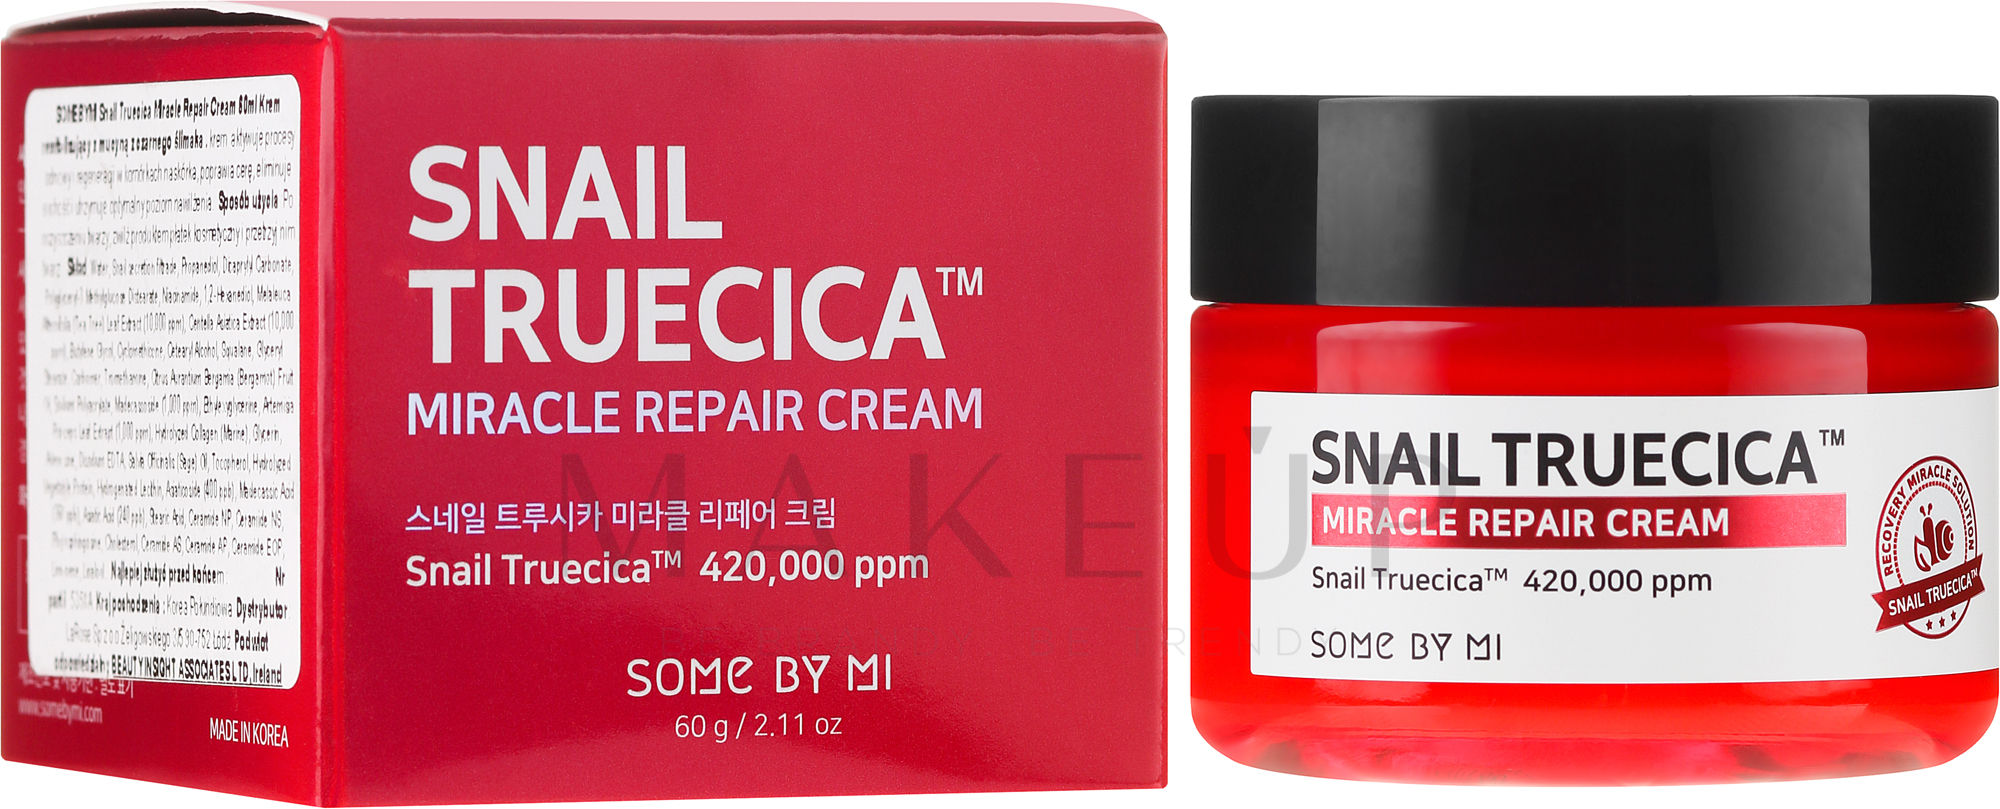 Revitalisierende Gesichtscreme mit Schneckenmucinextrakt und Ceramiden - Some By Mi Snail Truecica Miracle Repair Cream — Foto 60 g